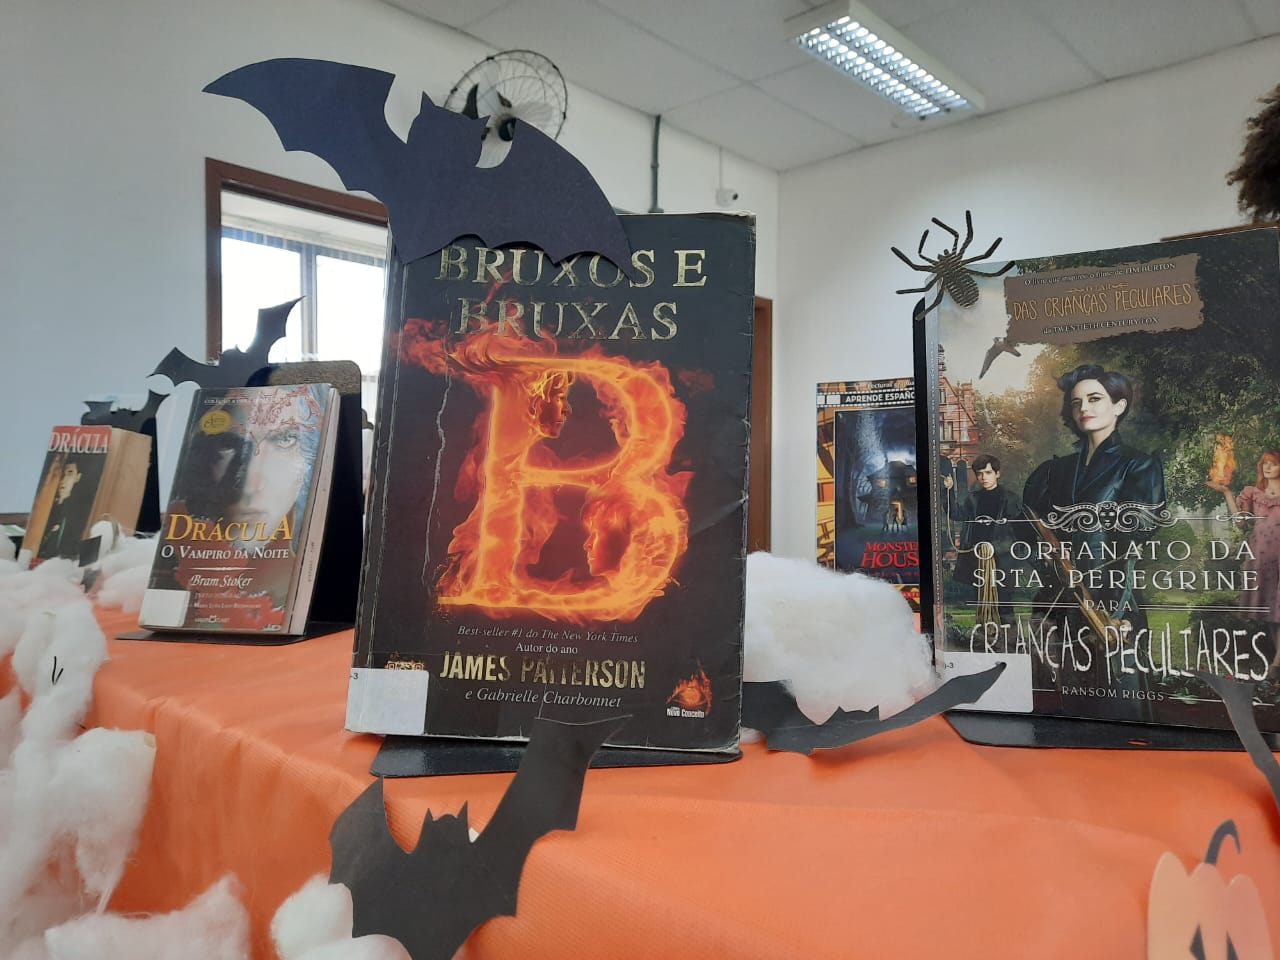 Imagem com fundo na cor laranja e livros que tratam sobre o tema da exposição halloween